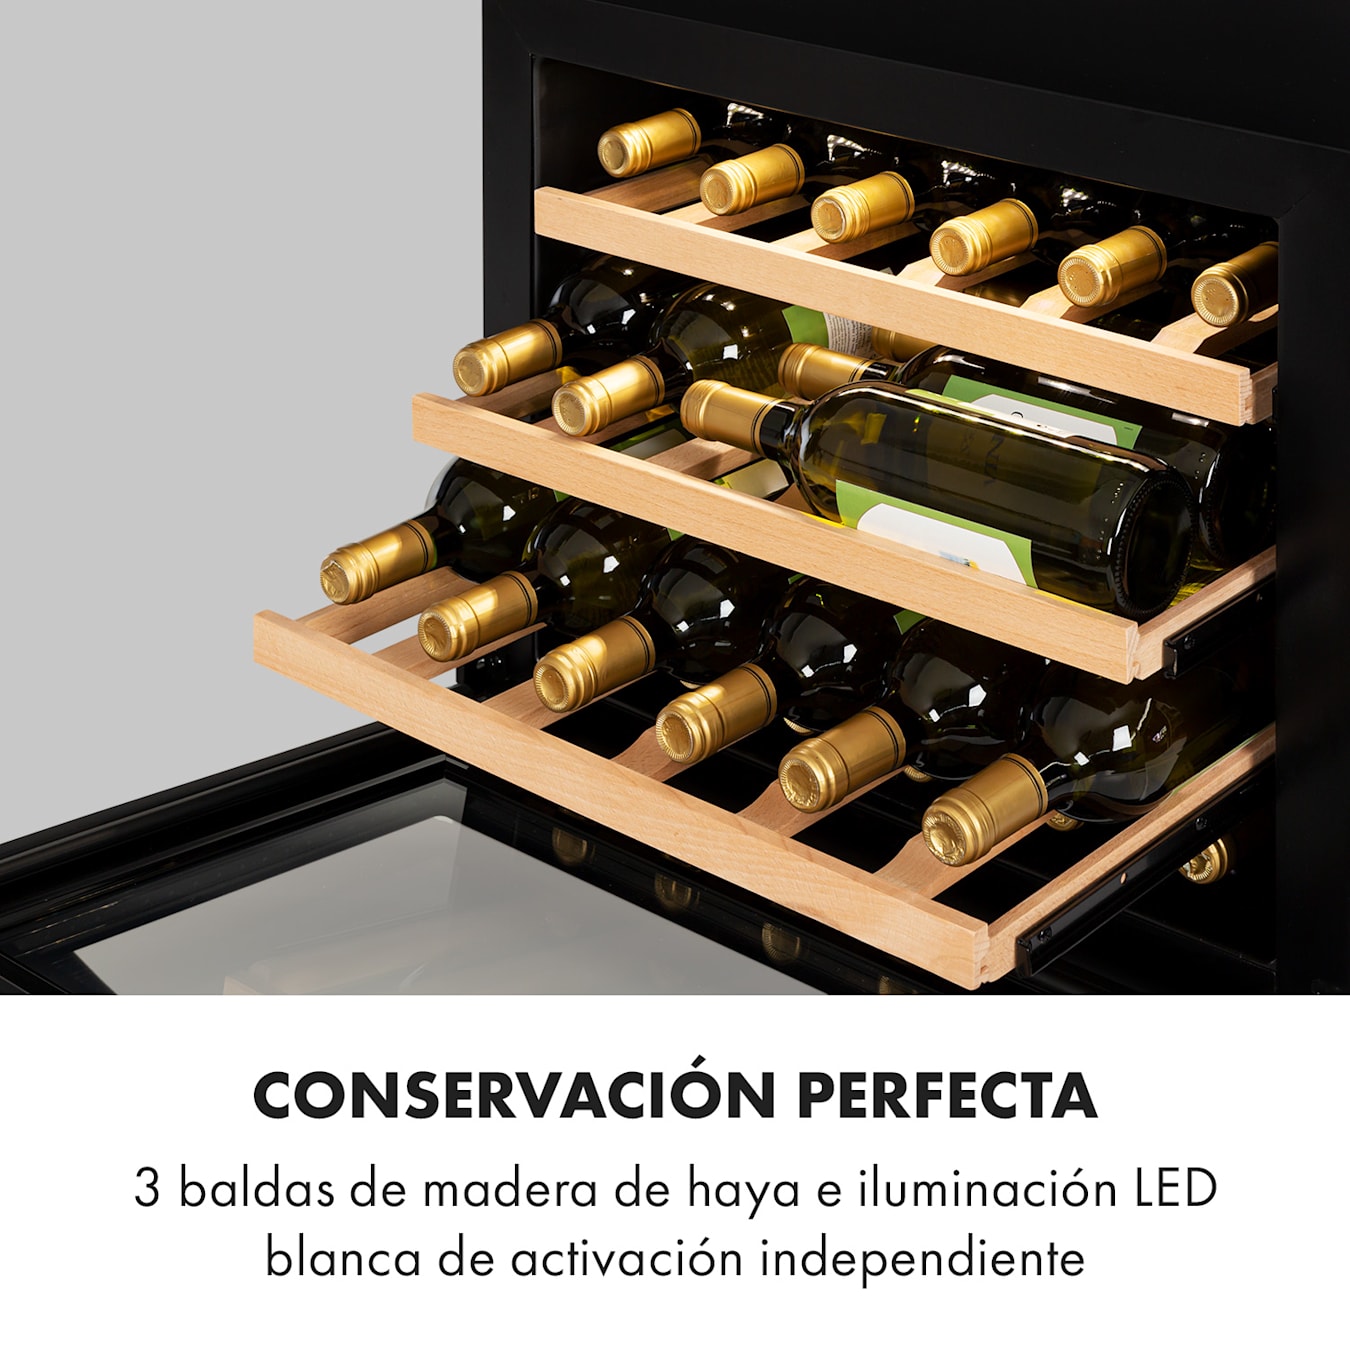 Vinsider 24 Built-In Uno Nevera para vinos empotrable 1 zona 24 botellas 24  botellas